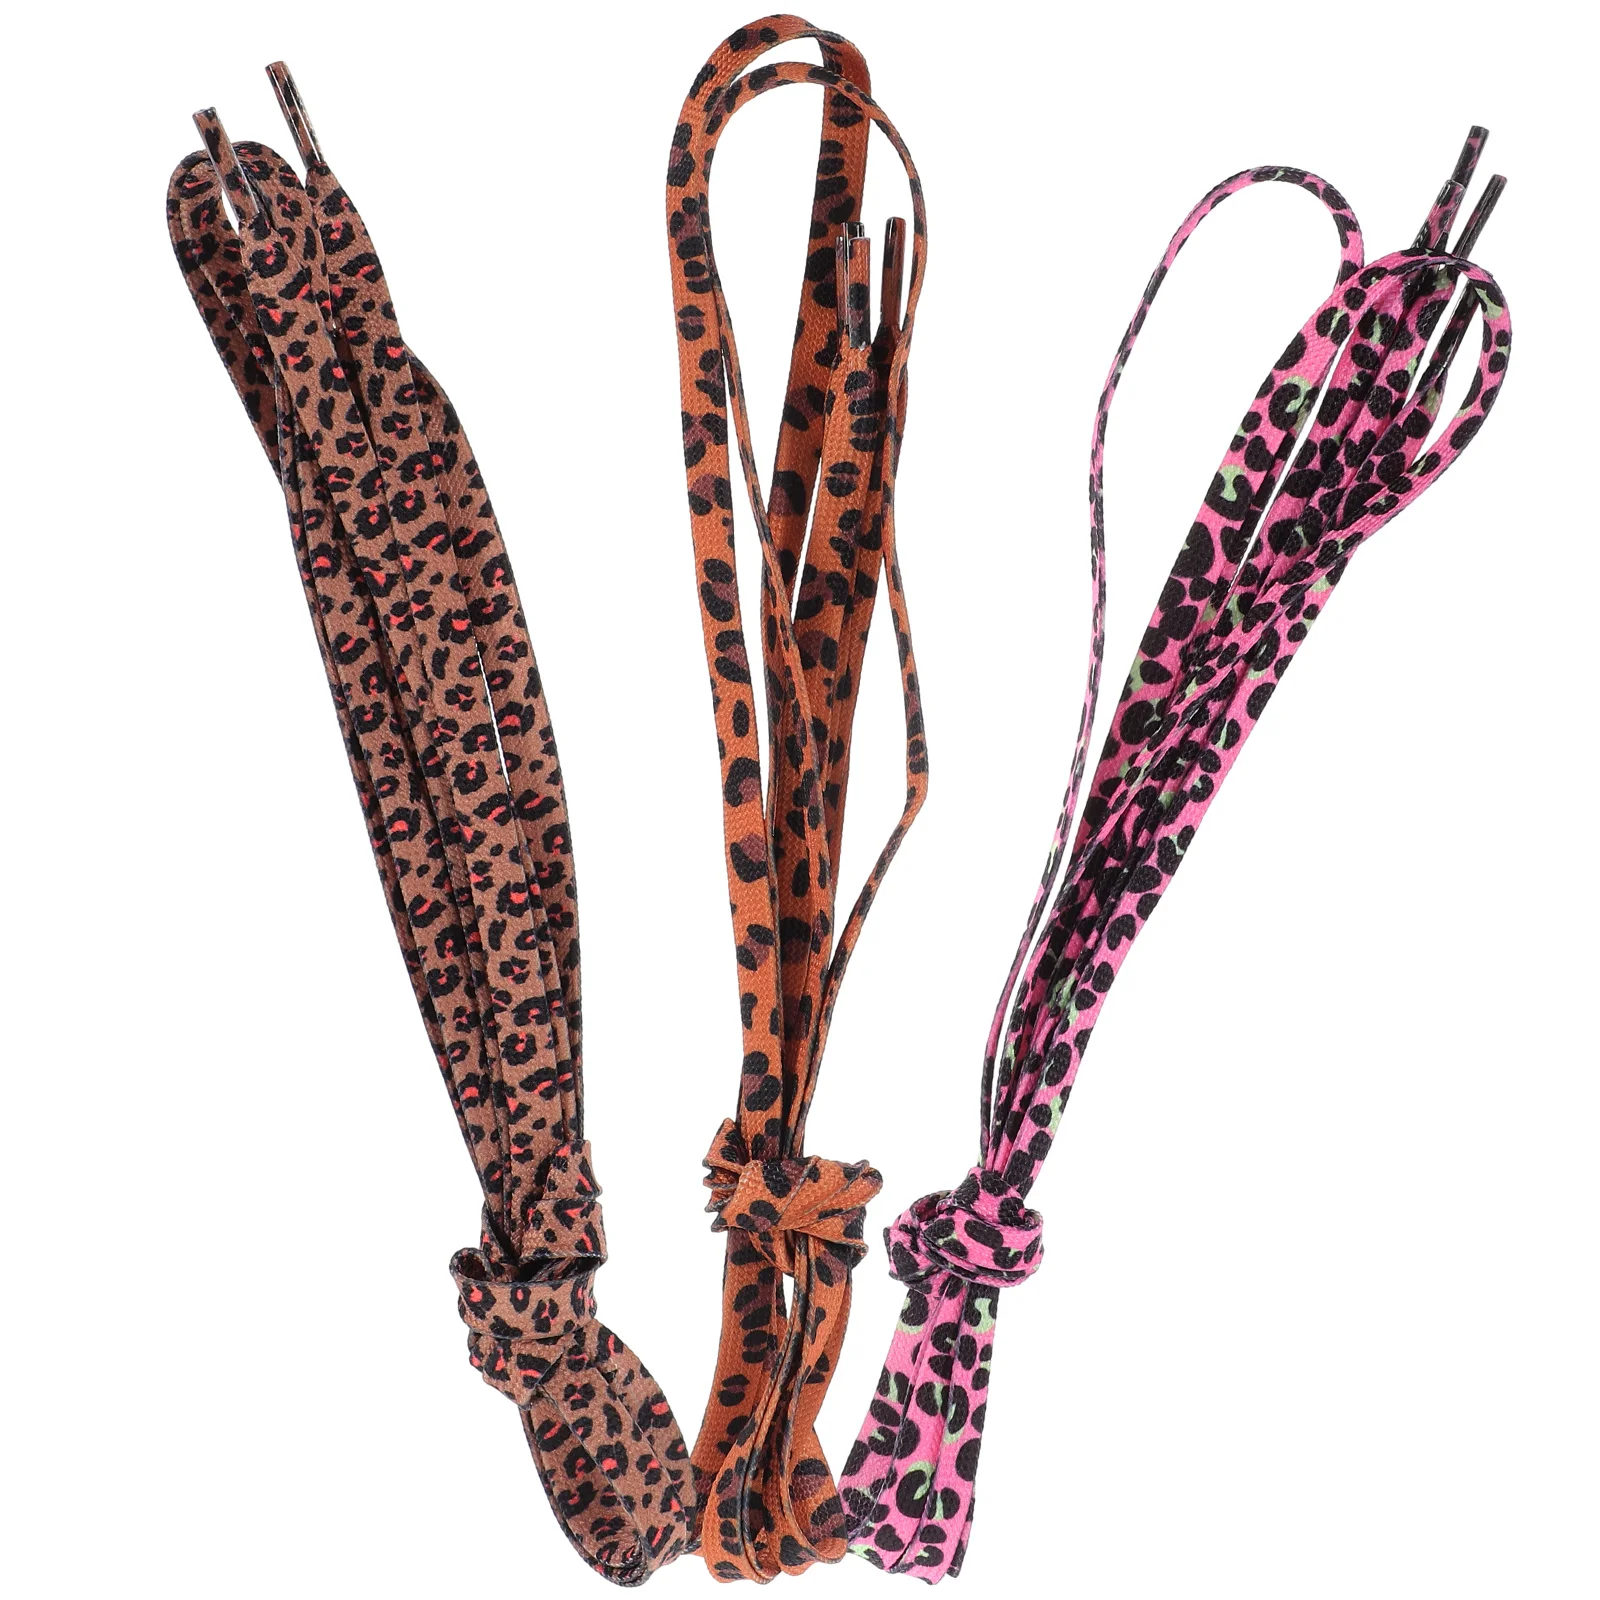 Cadarços elásticos para tênis, textura leopardo poliéster, 3 pares